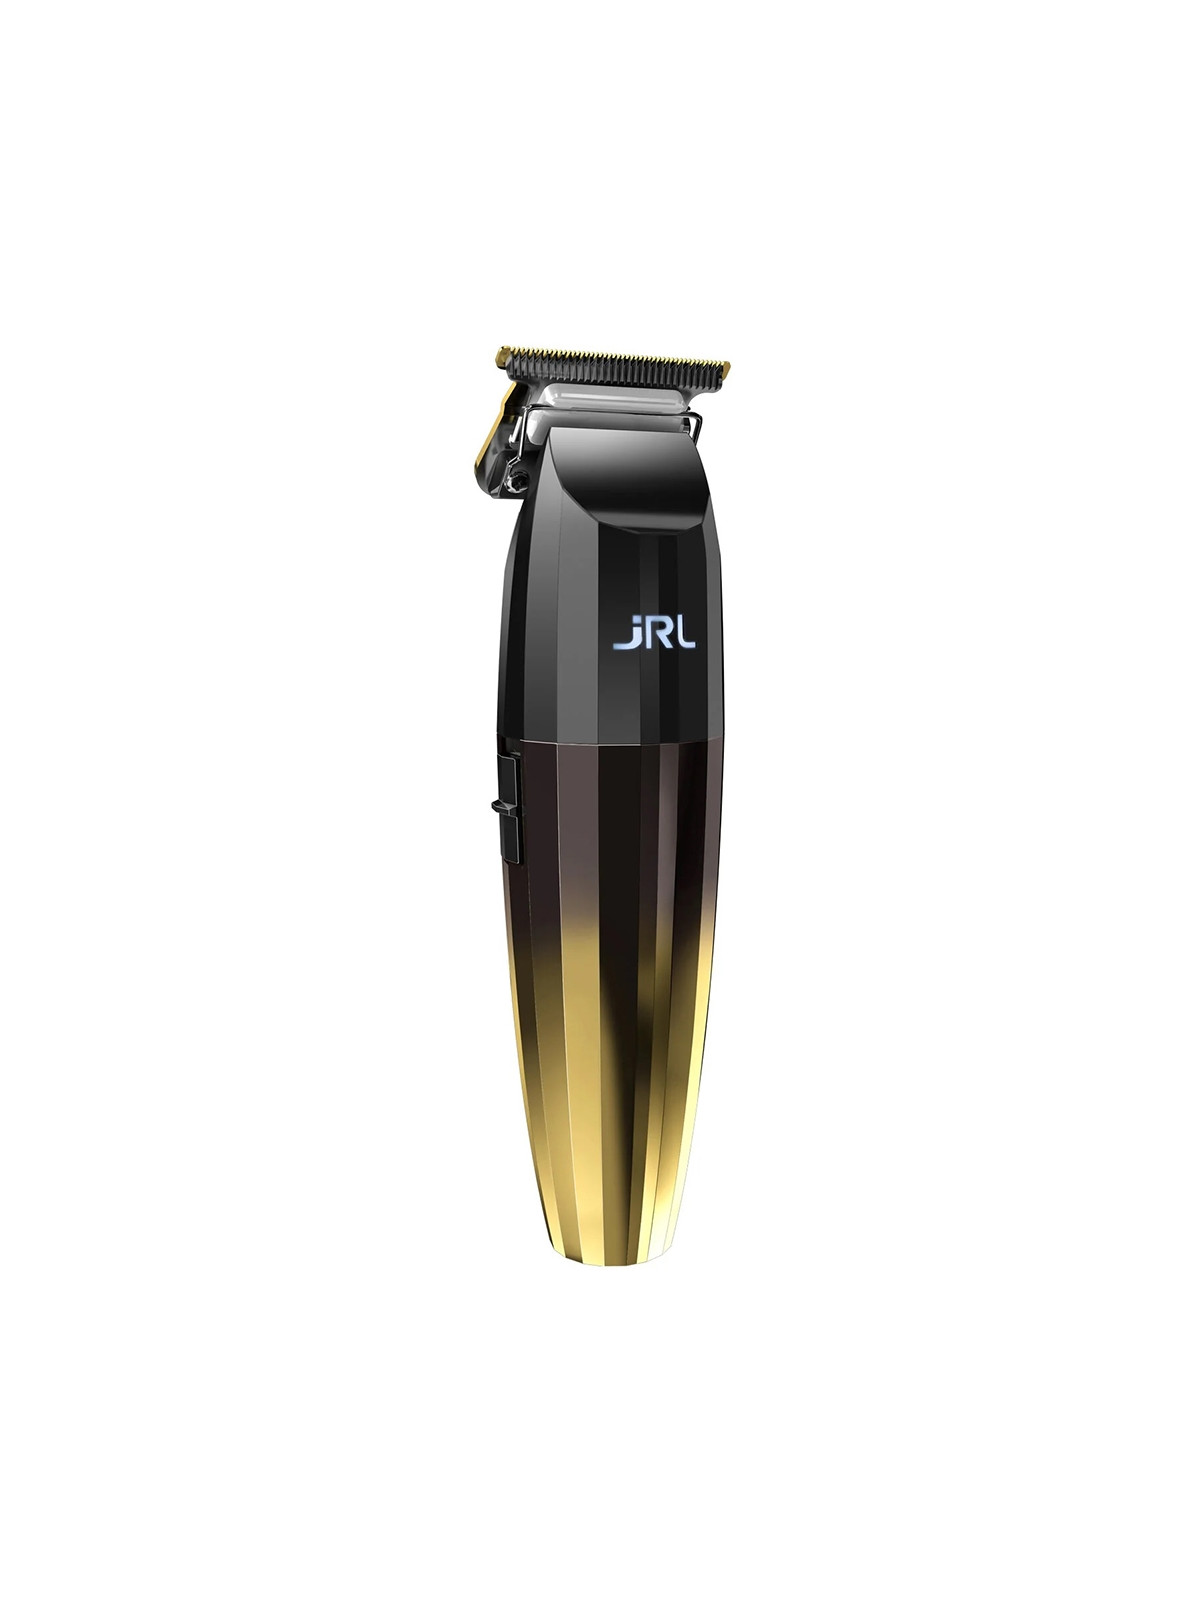 JRL FreshFade 2020T Gold trimmer